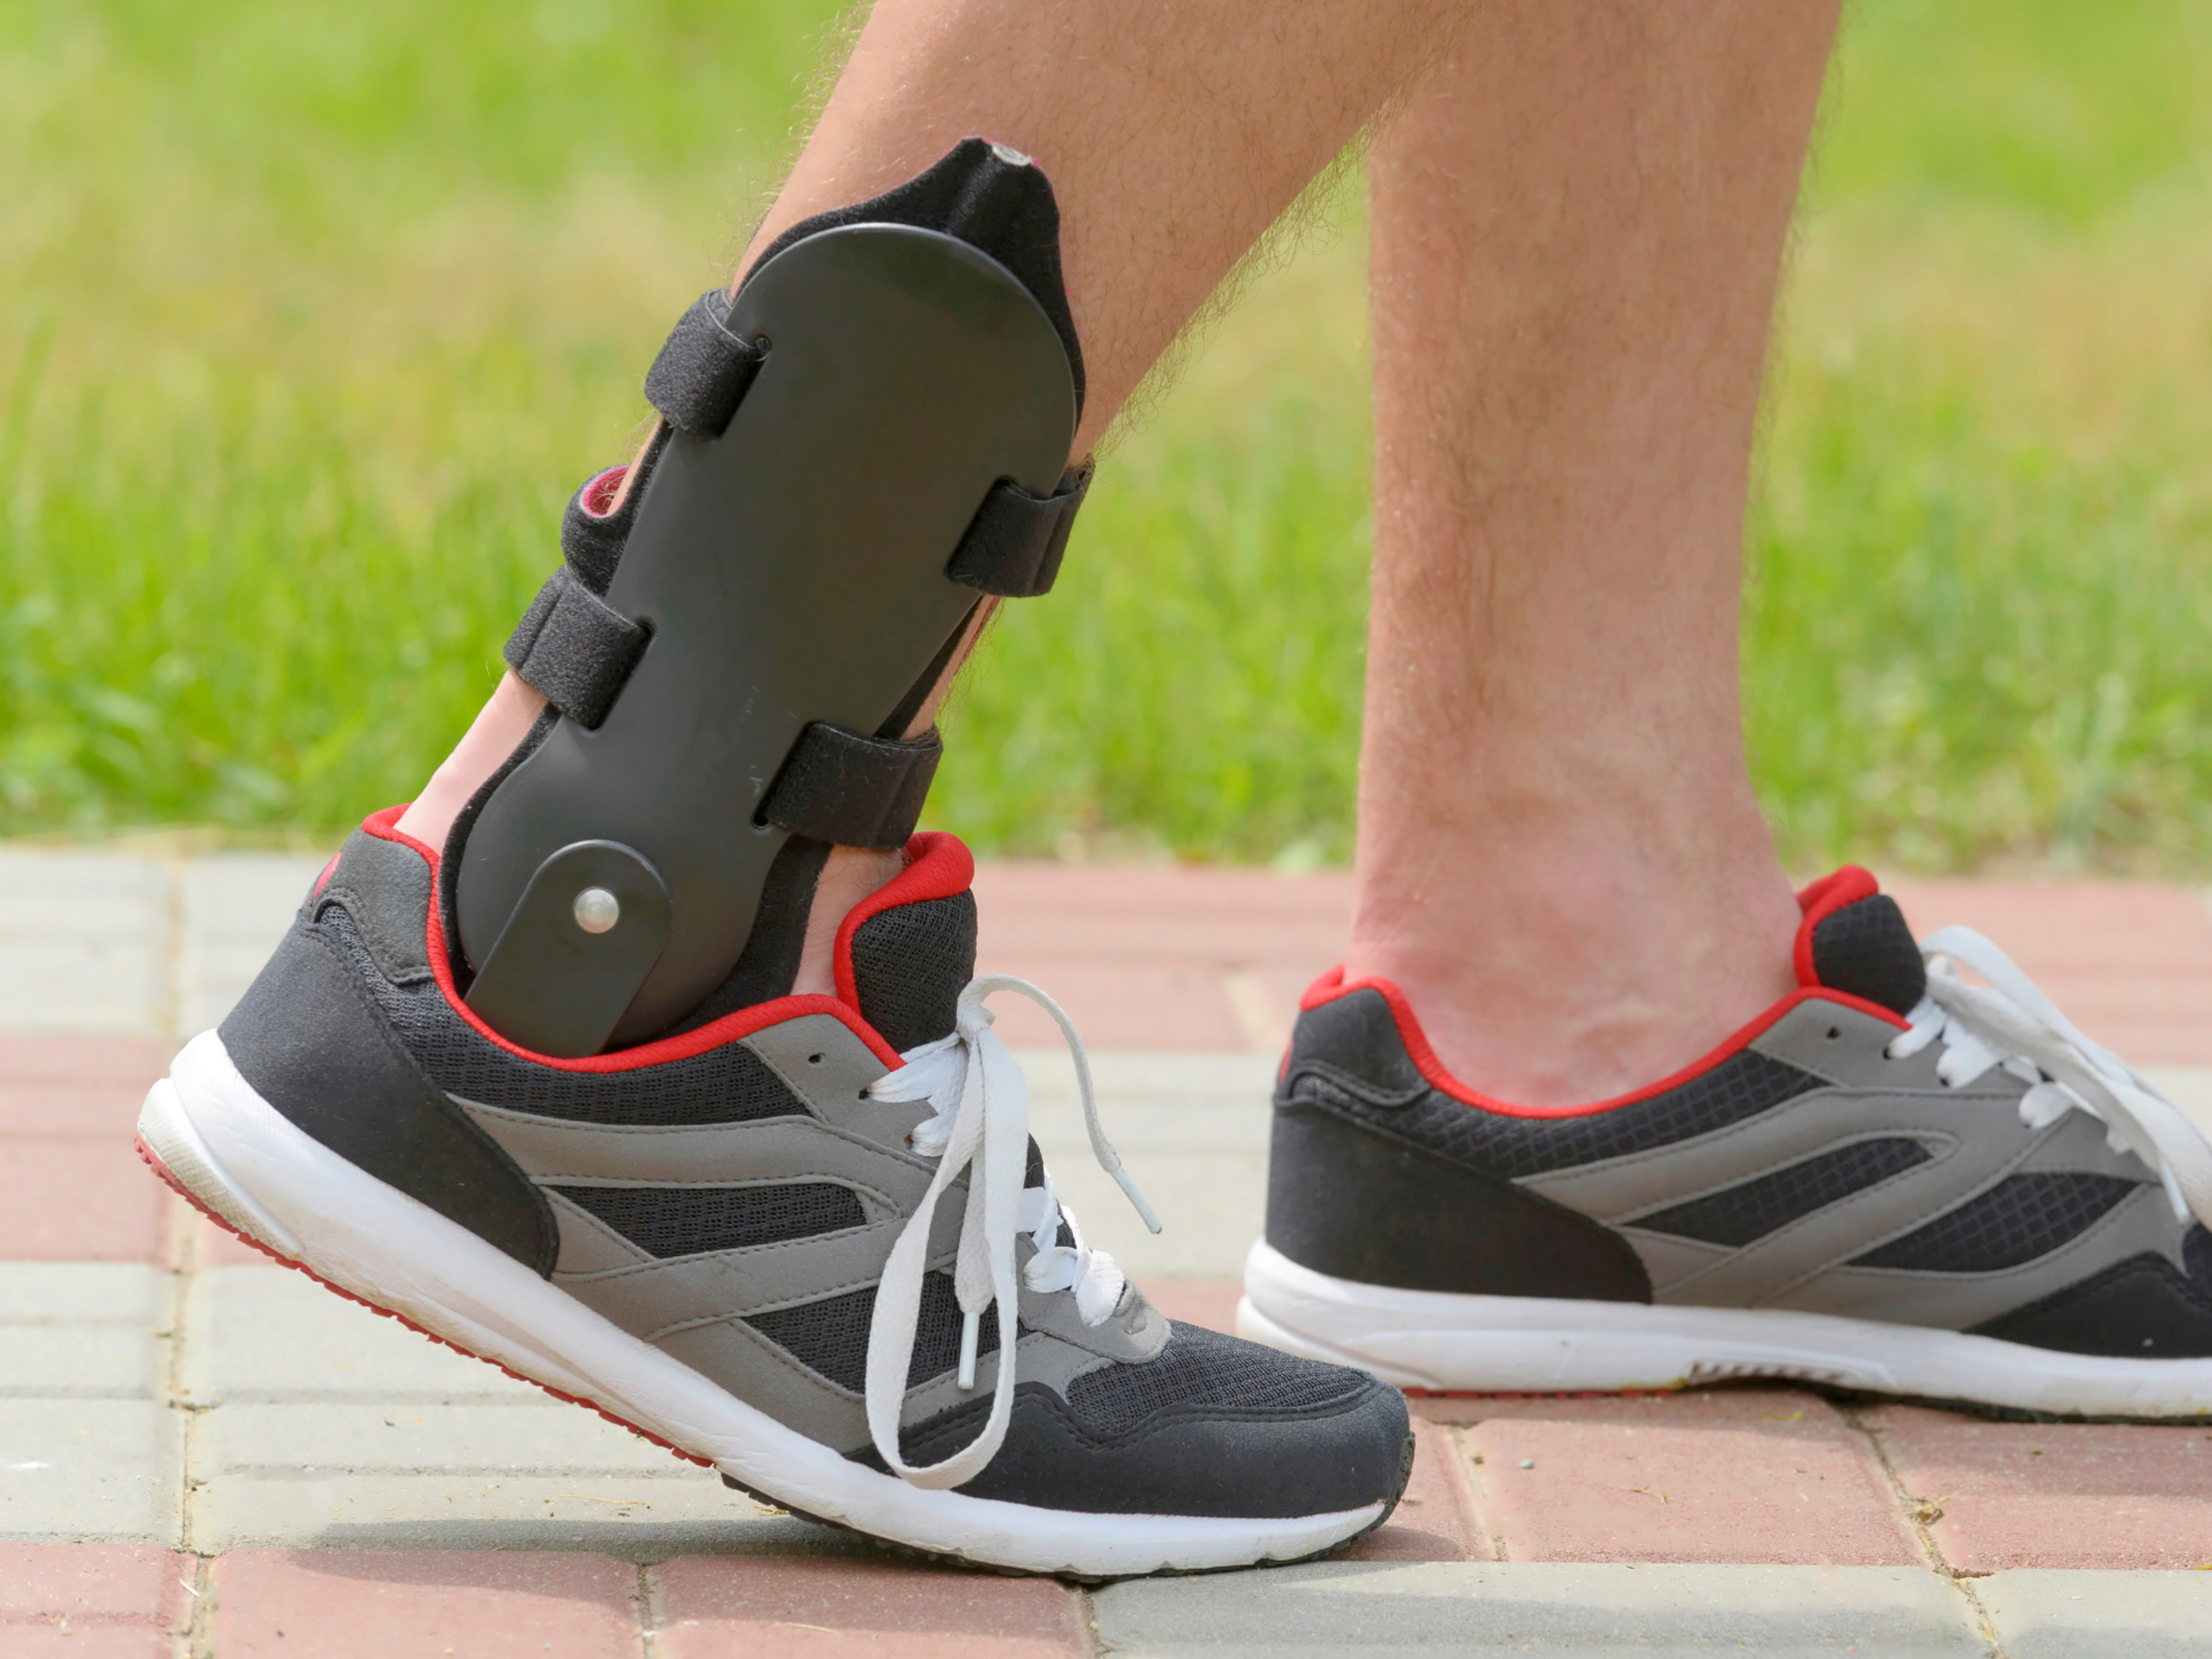 Verstauchte Knöchel werden durch die Einschränkung der Umkehr- und Eversionsbewegung behoben, so dass Sie gehen und laufen können, ohne Ihre Bänder zu strapazieren.